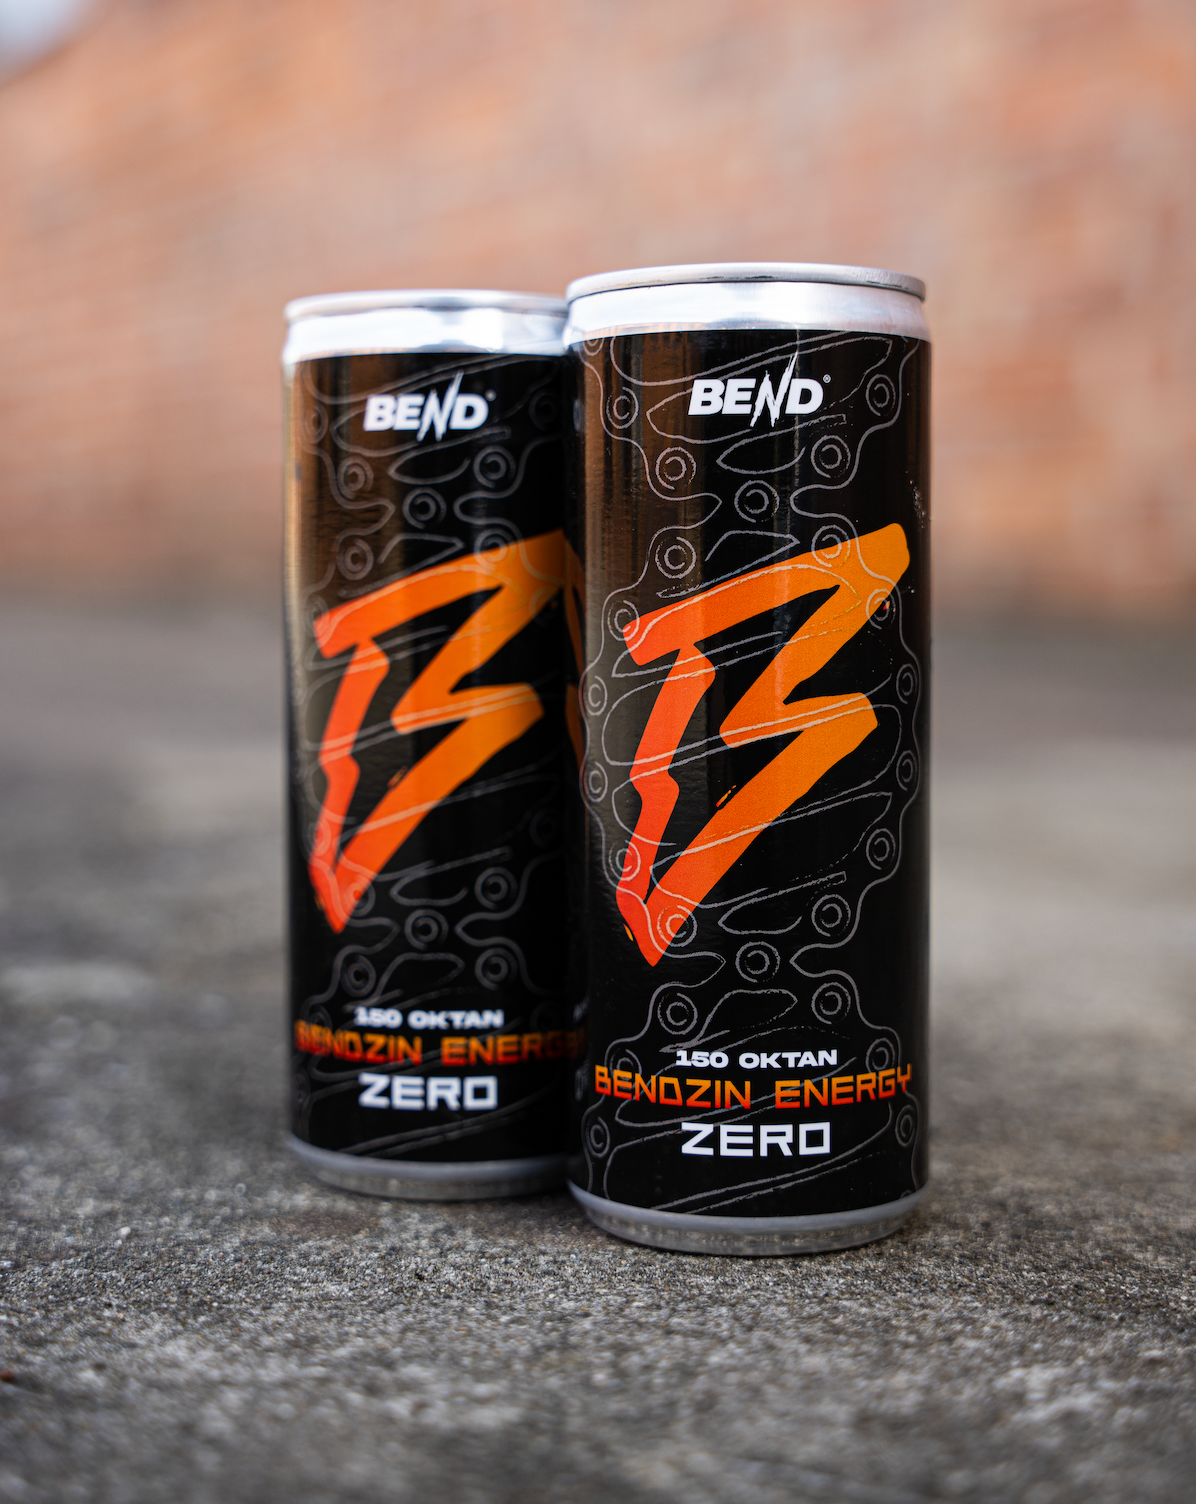 Bendzin Energy Zero